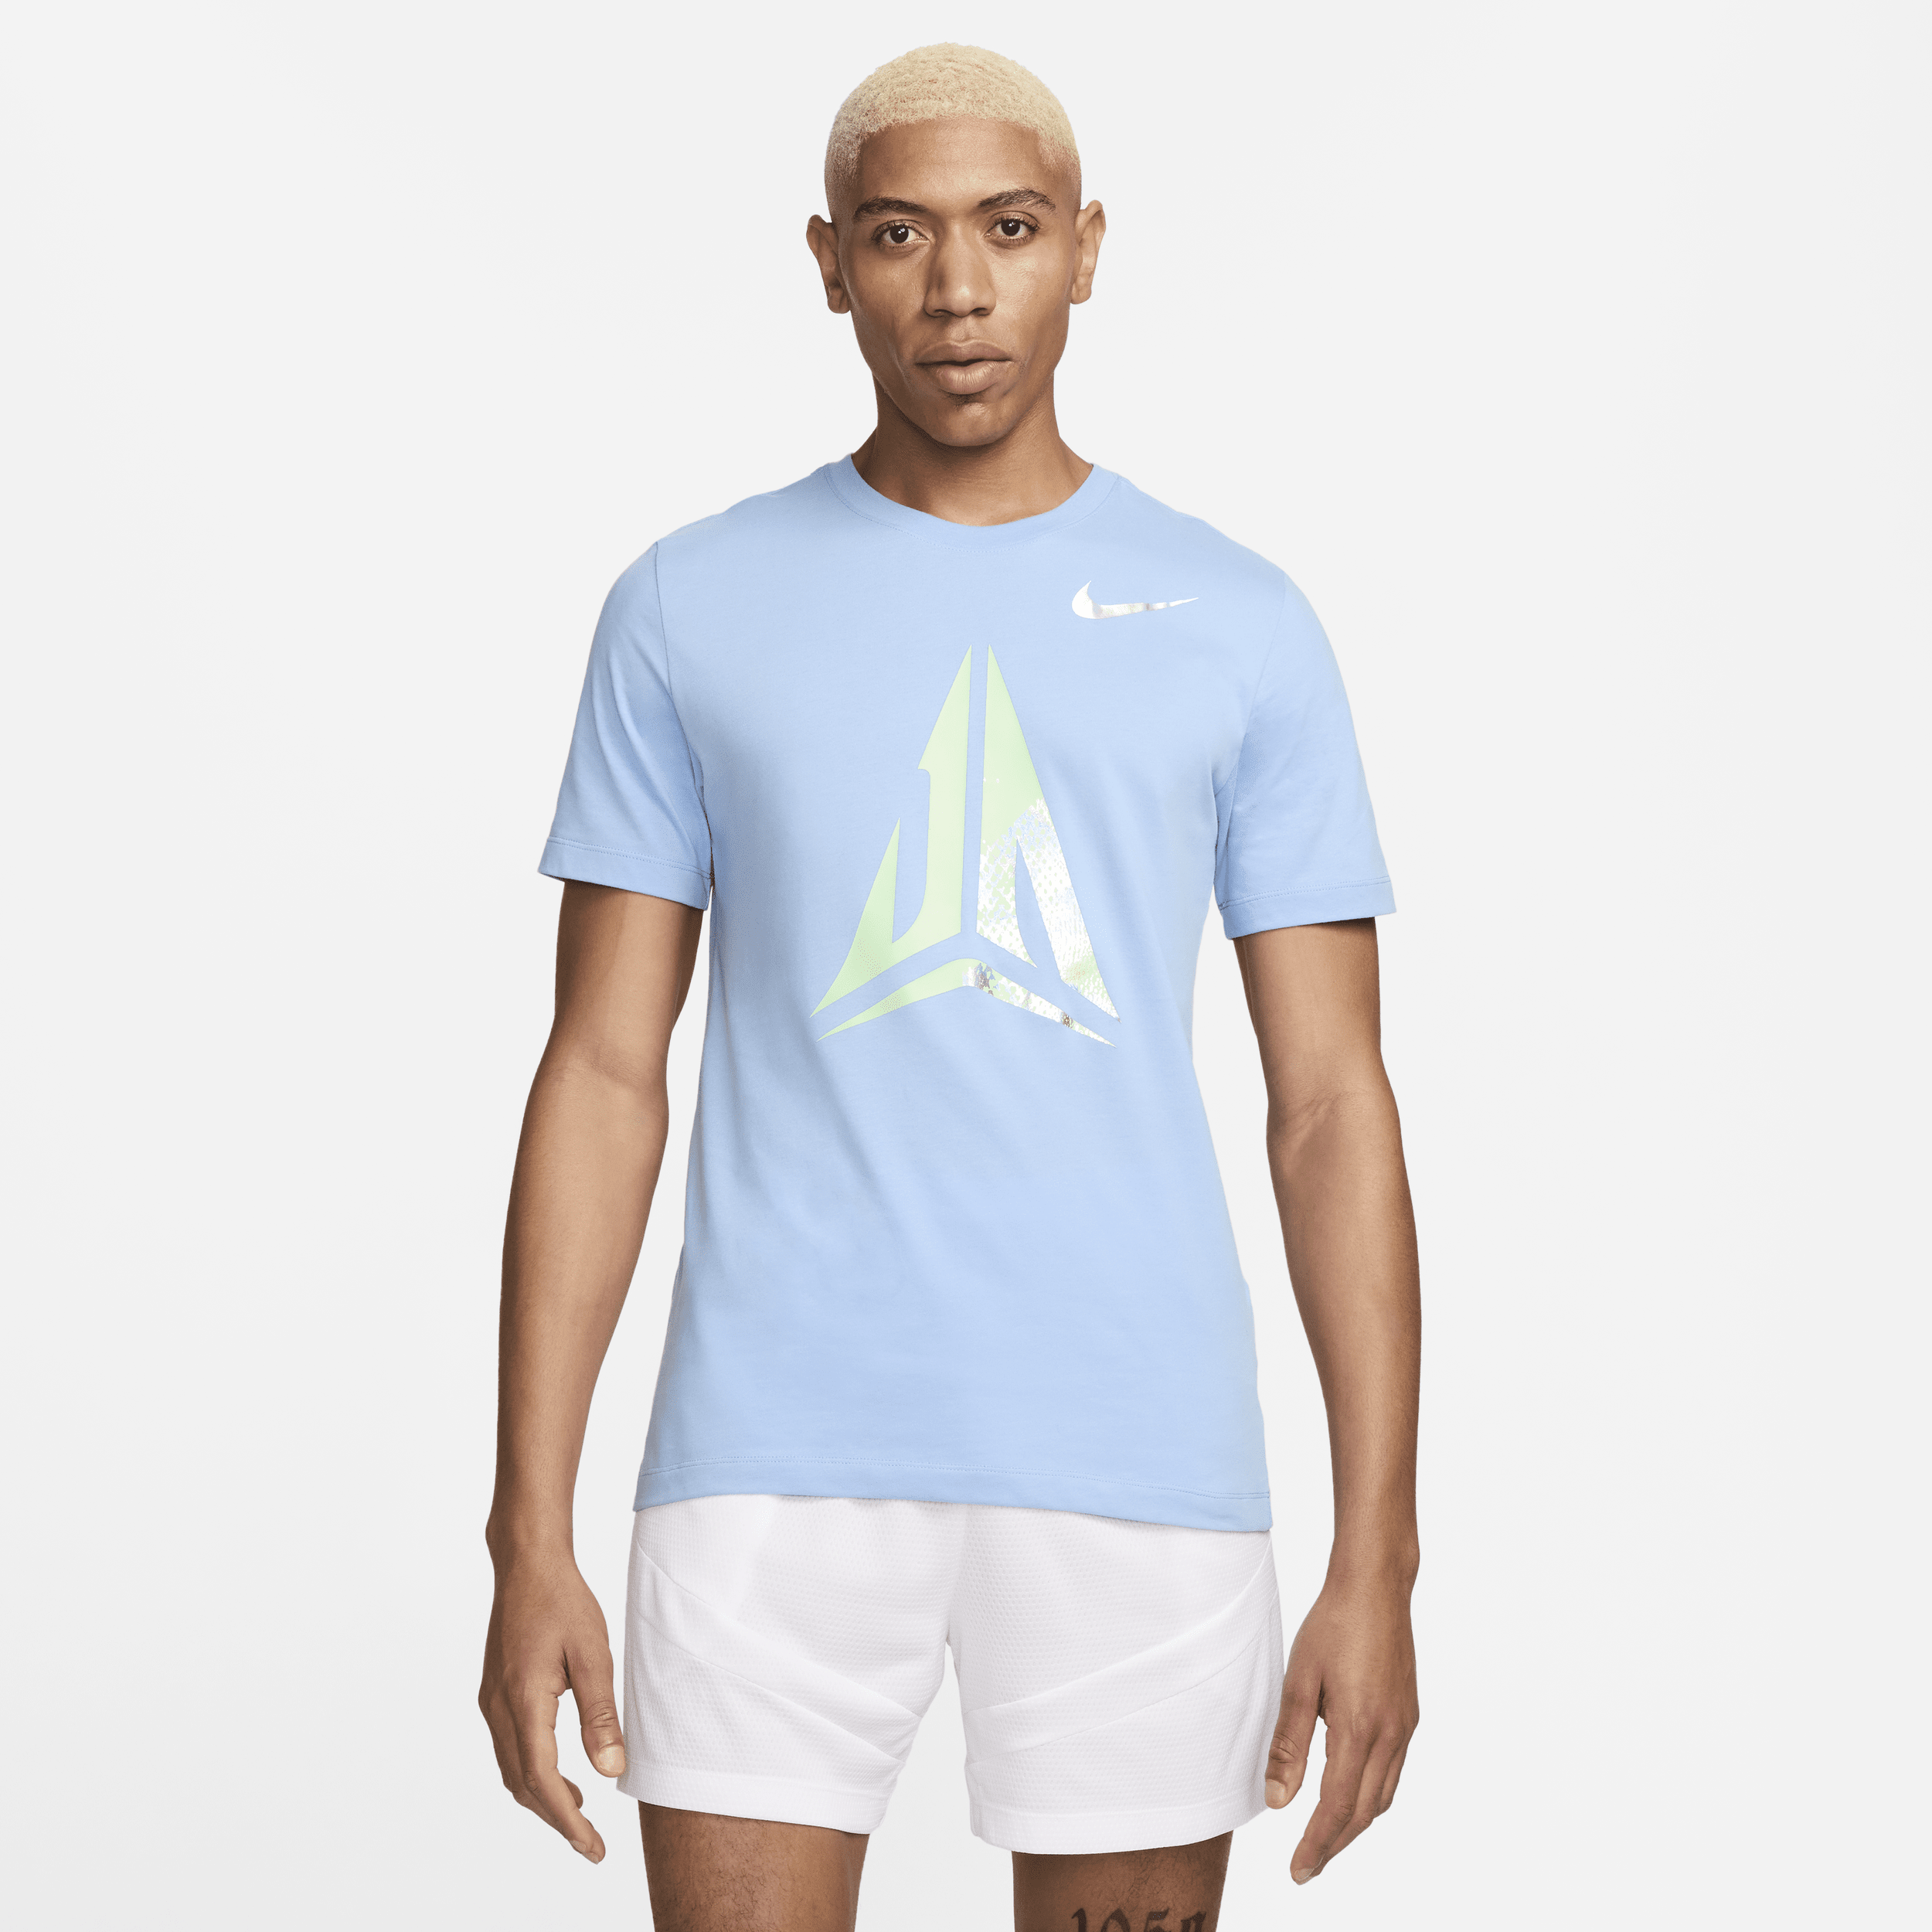 Camiseta Nike Dri-FIT de baloncesto - Hombre - Azul